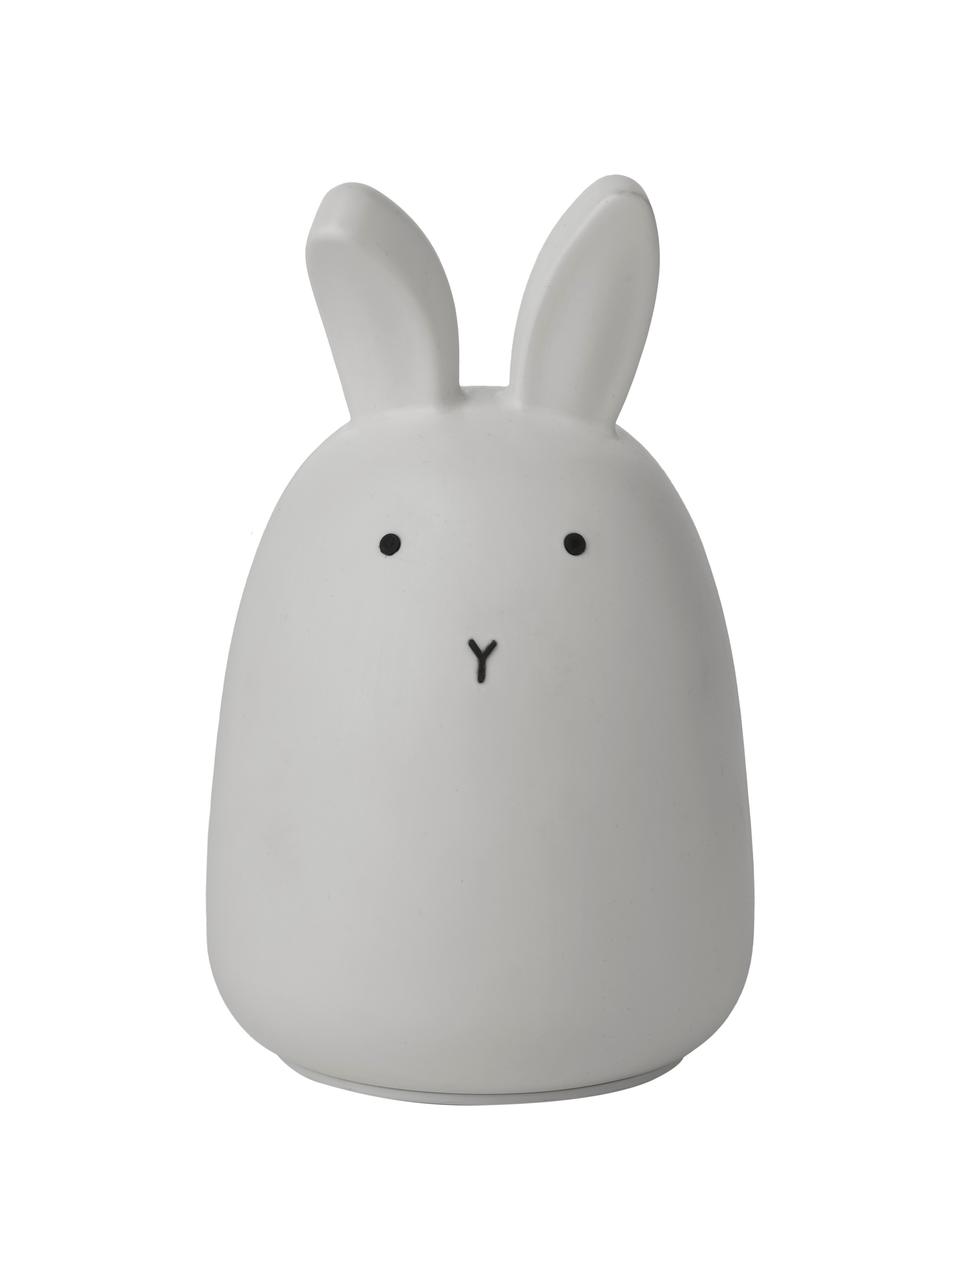 Dekoracja świetlna LED Winston Rabbit, 100% silikon, Szary, Ø 11 x W 14 cm